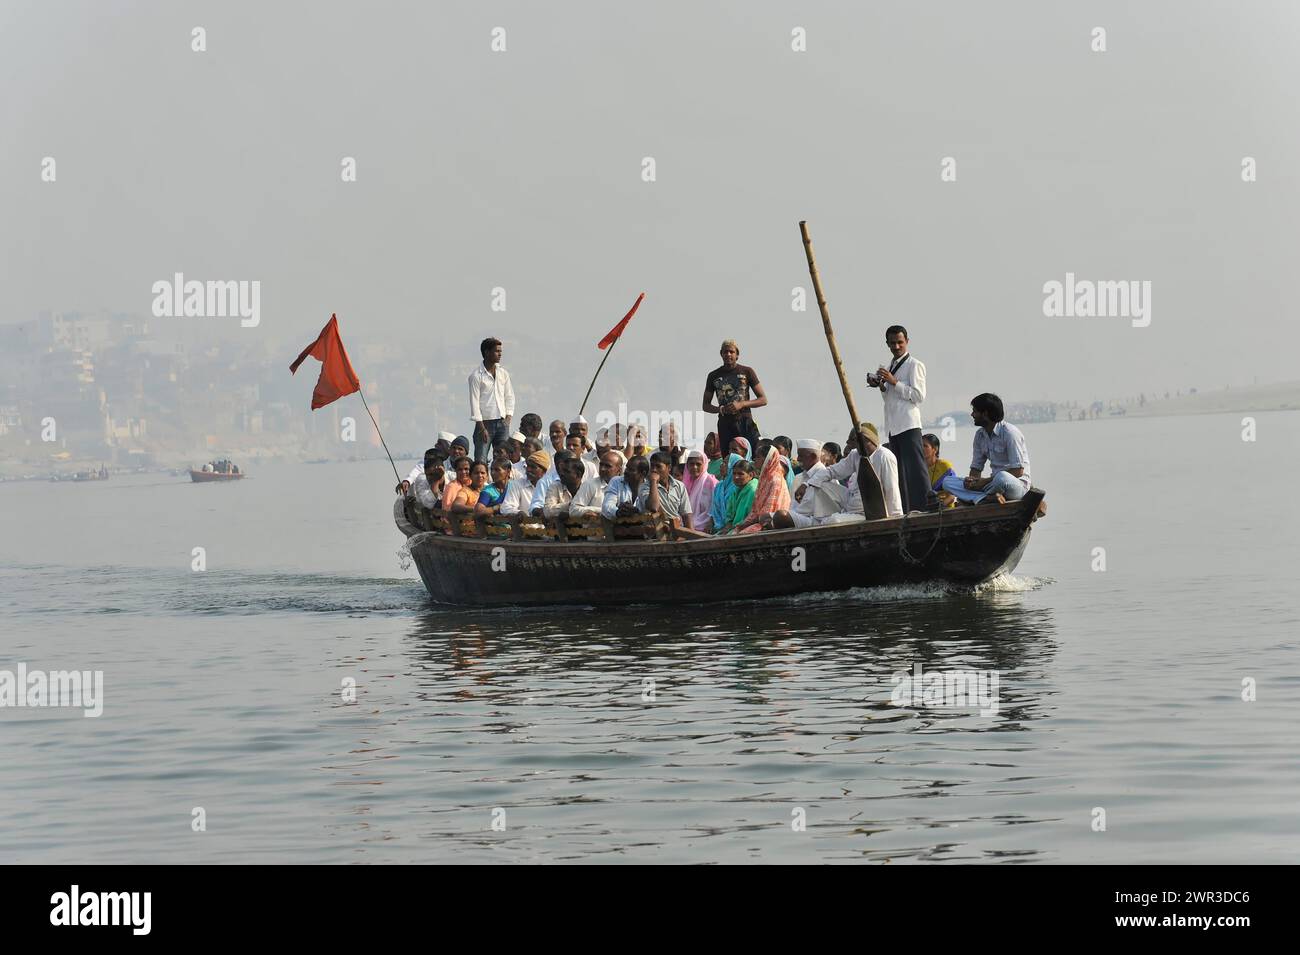 Gruppe von Passagieren auf einem Boot auf einem Fluss, mit einem Fährmann, der mit einem langen Ruder steuert, Varanasi, Uttar Pradesh, Indien Stockfoto